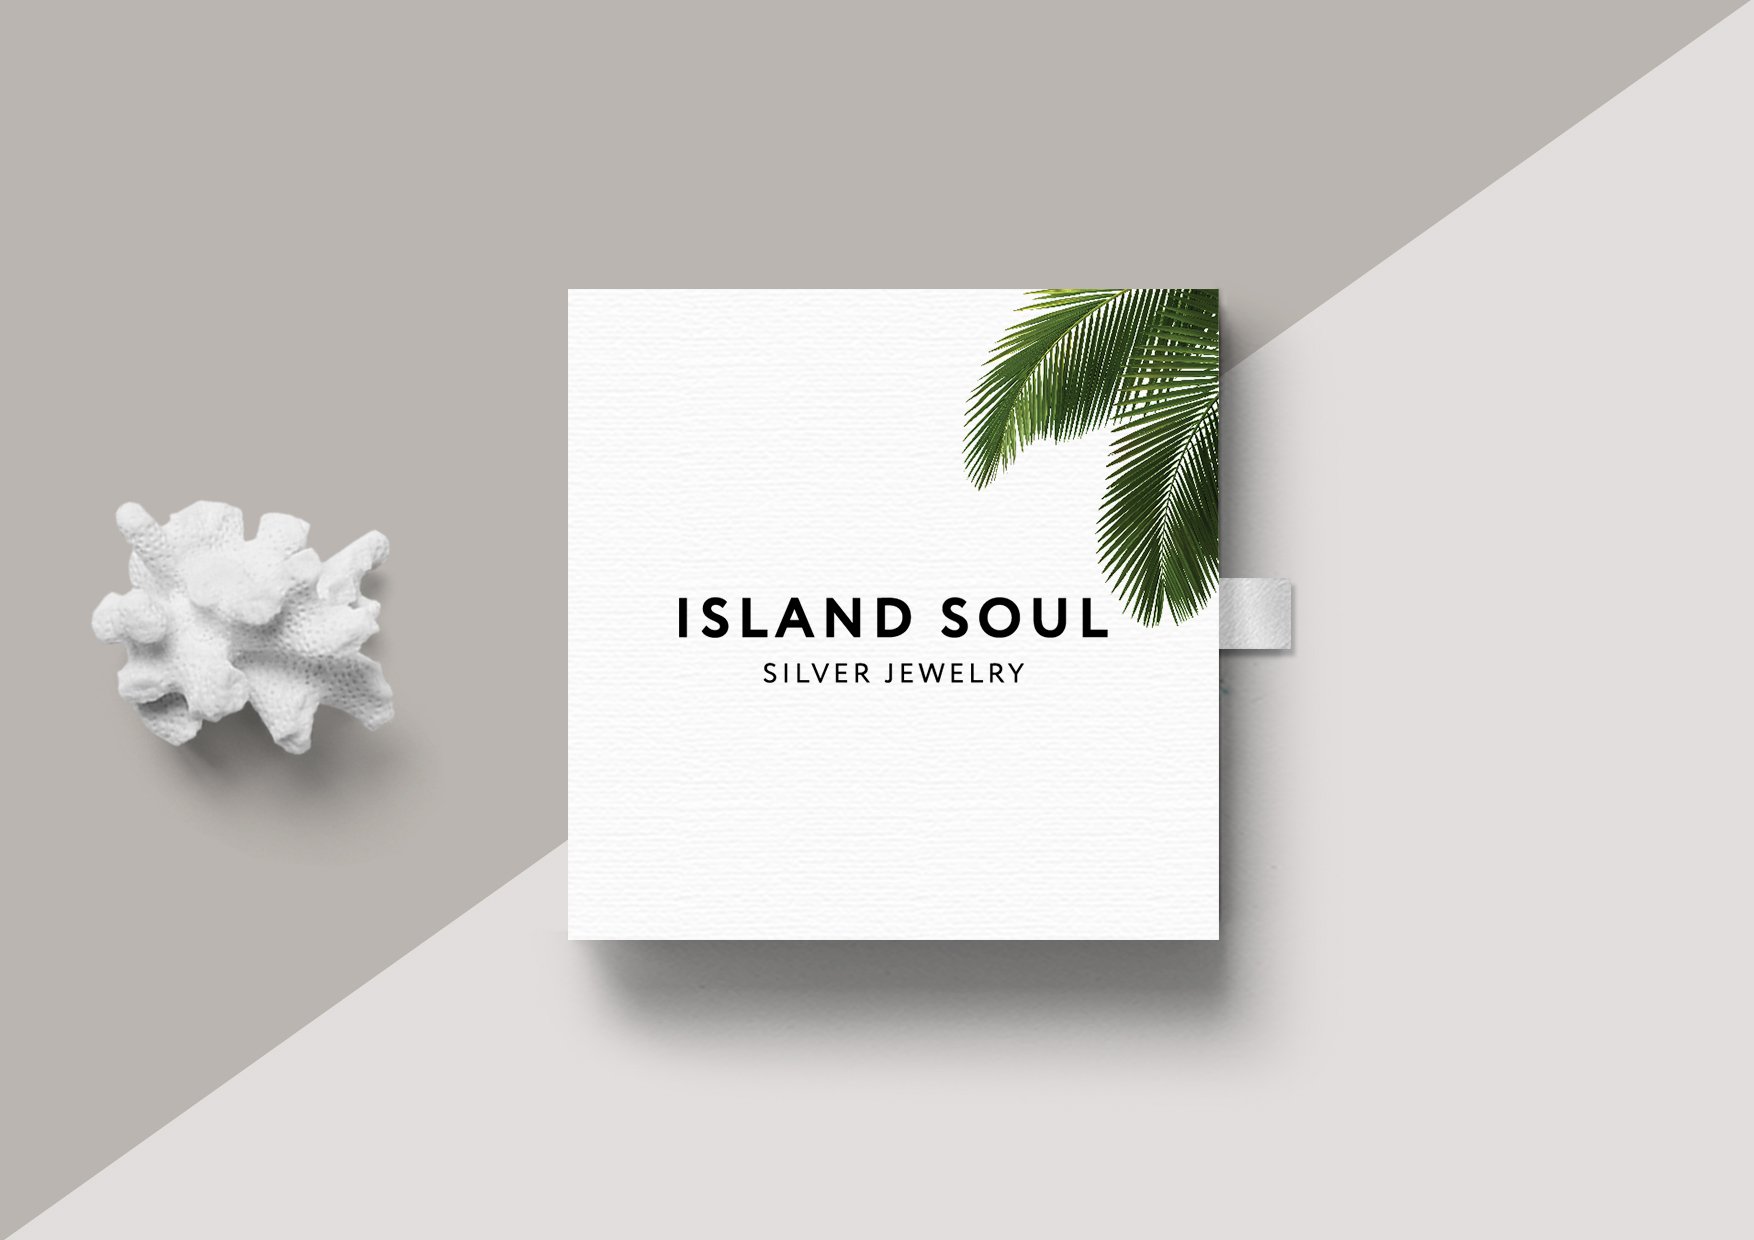 Island Soul